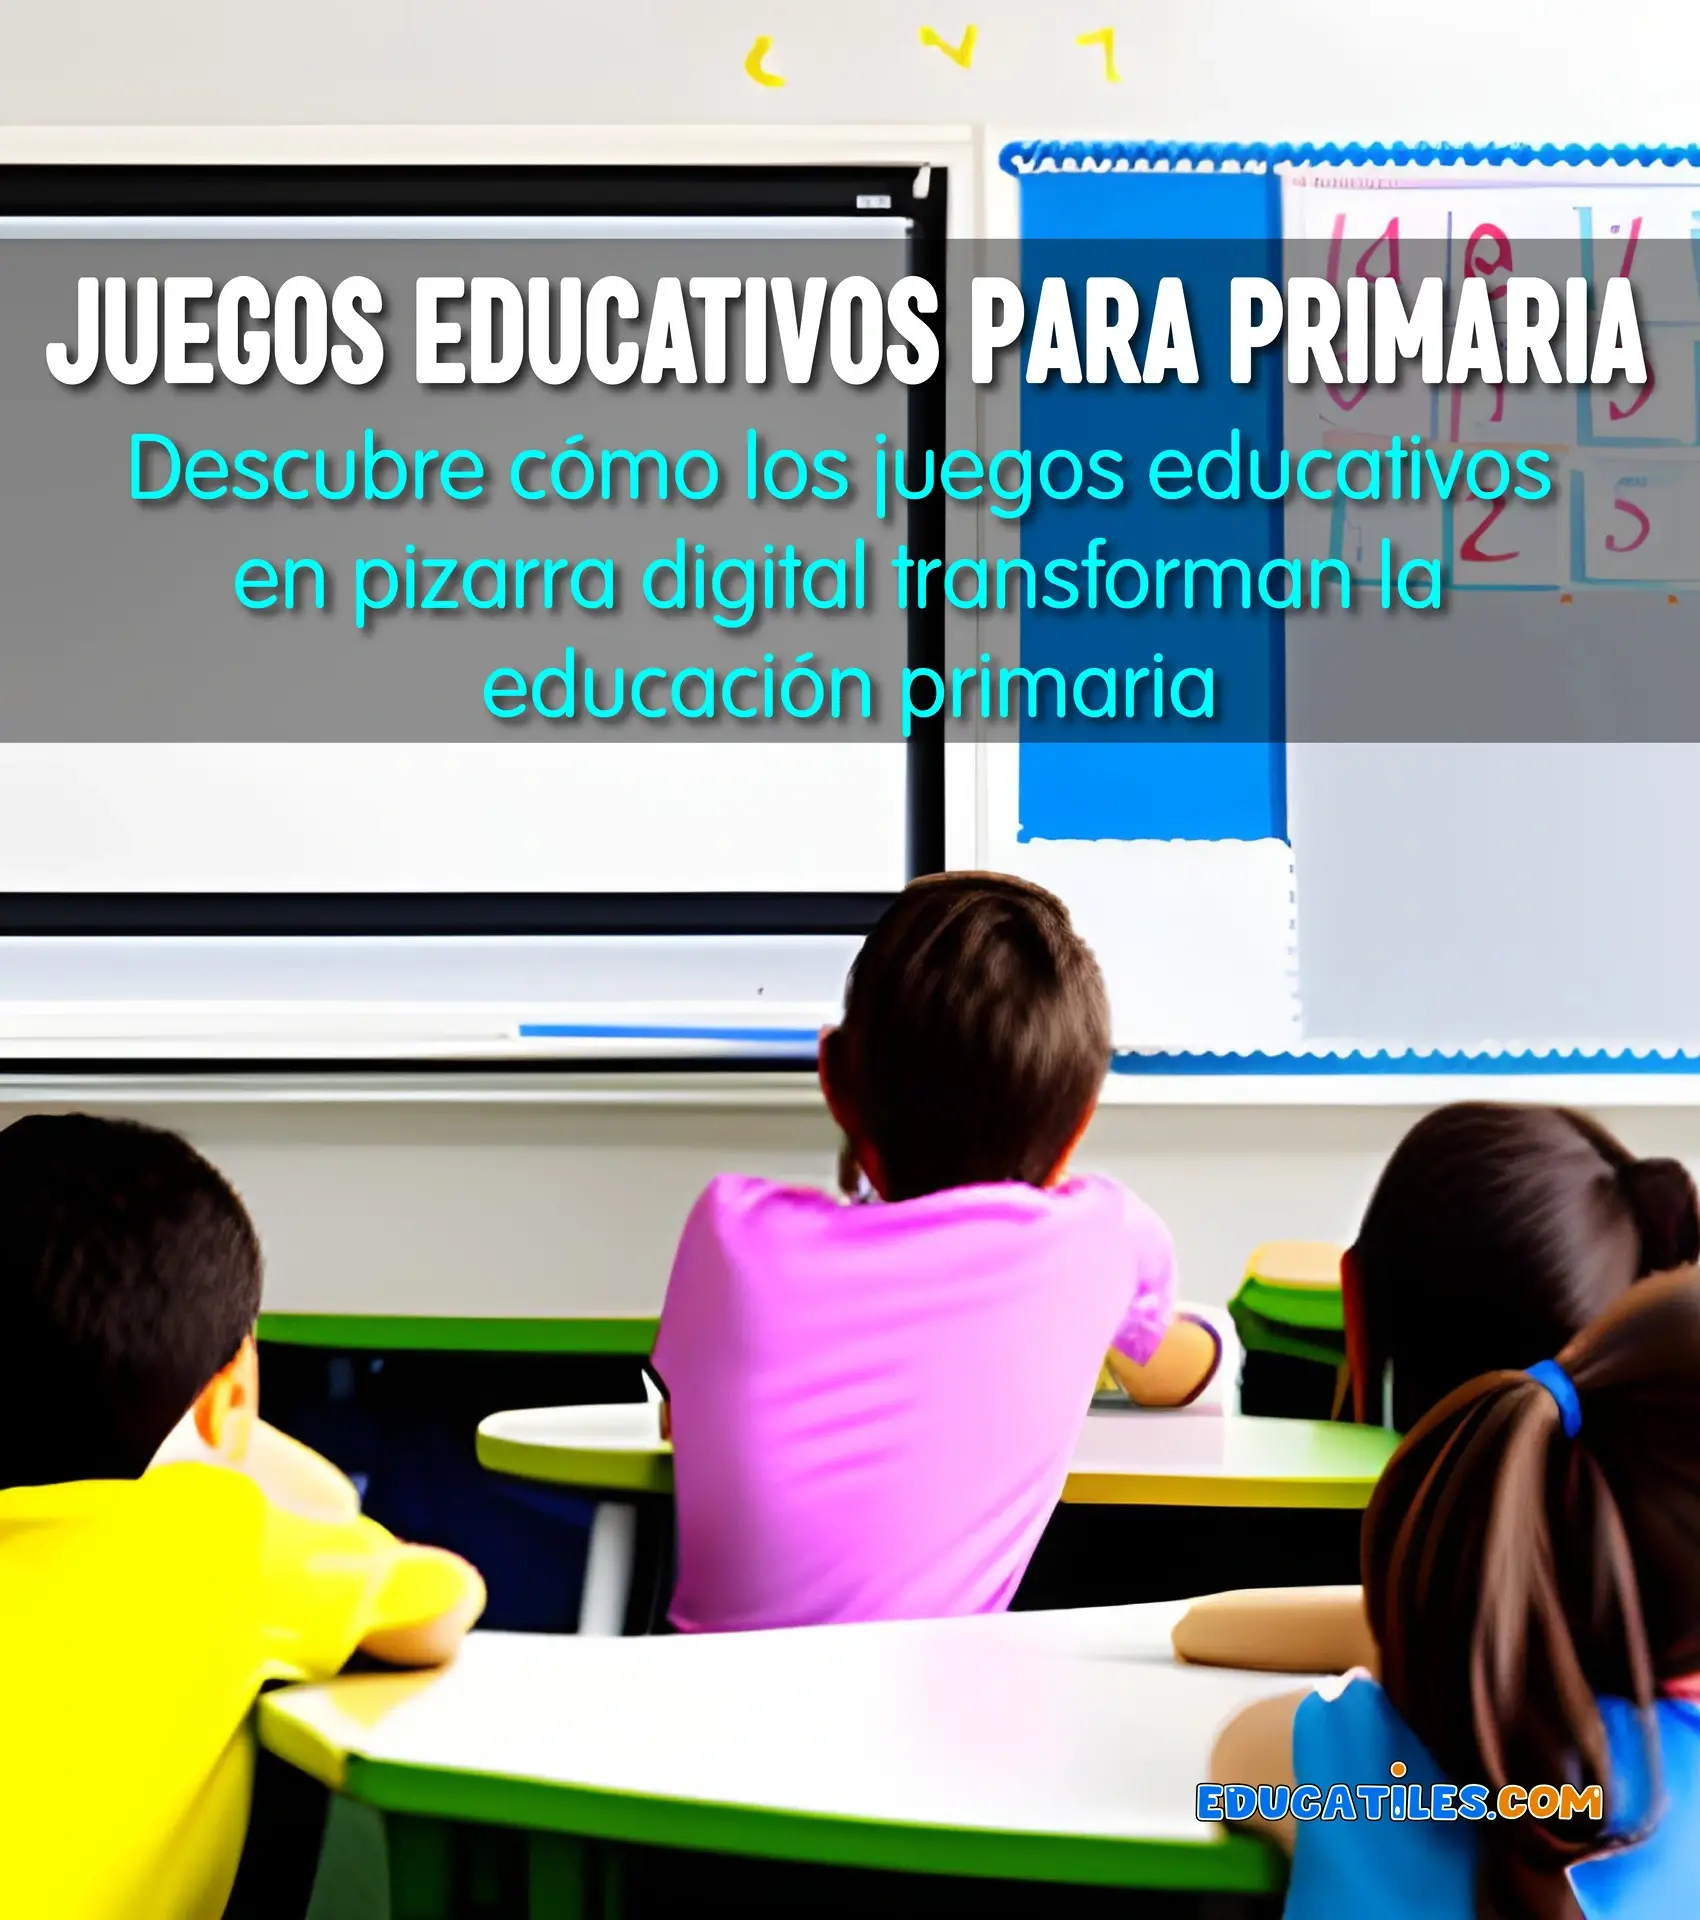 Juguetes educativos para niños de 3 a 5 años - Cuentos en español,  Materiales educativos, Historias cortas para niños y Orientación familiar